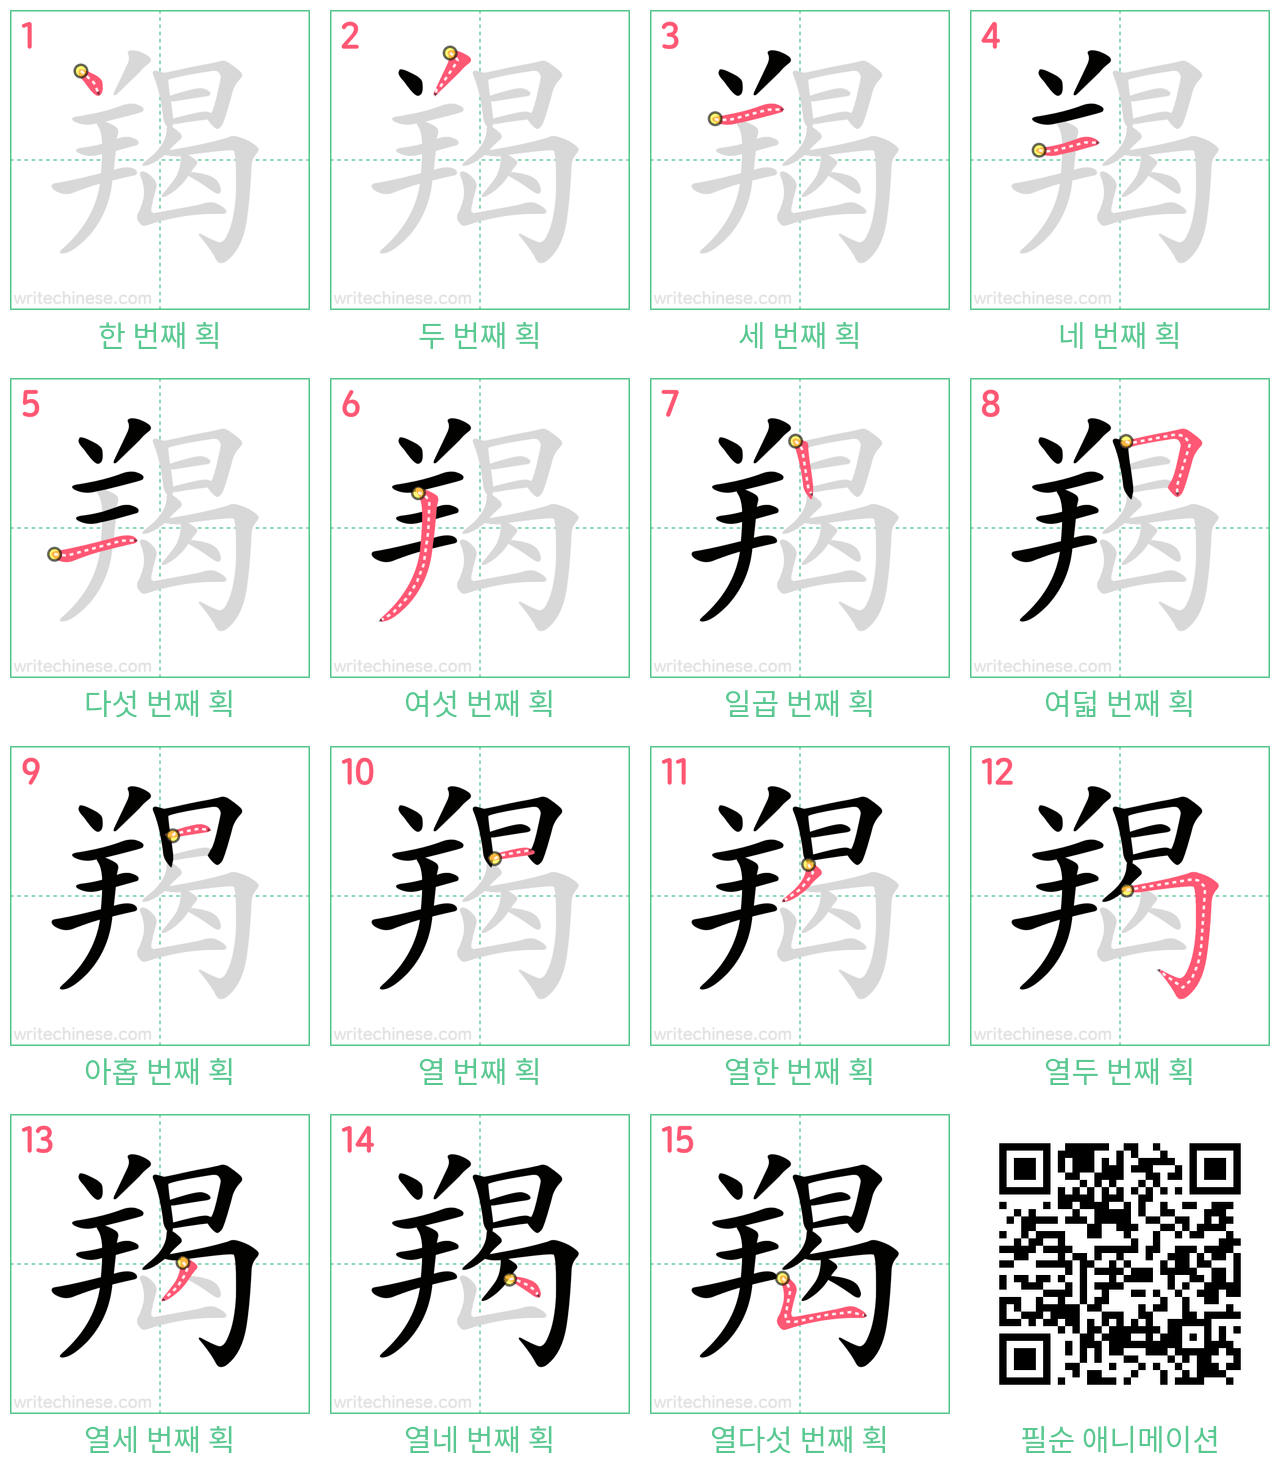 羯 step-by-step stroke order diagrams